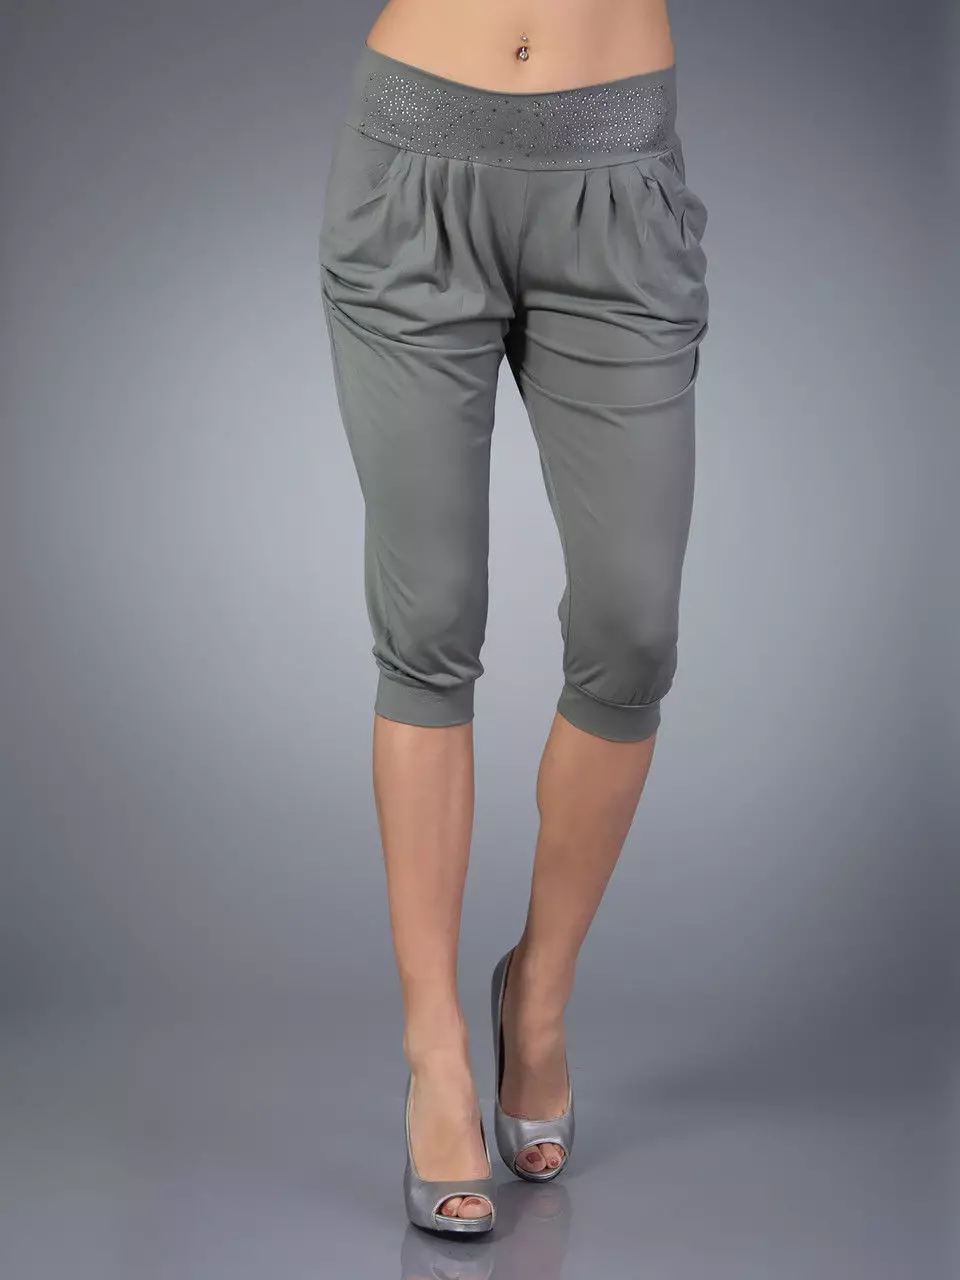 Modne hlače 2021: Ženski elegantni modeli, modni trendovi 917_159